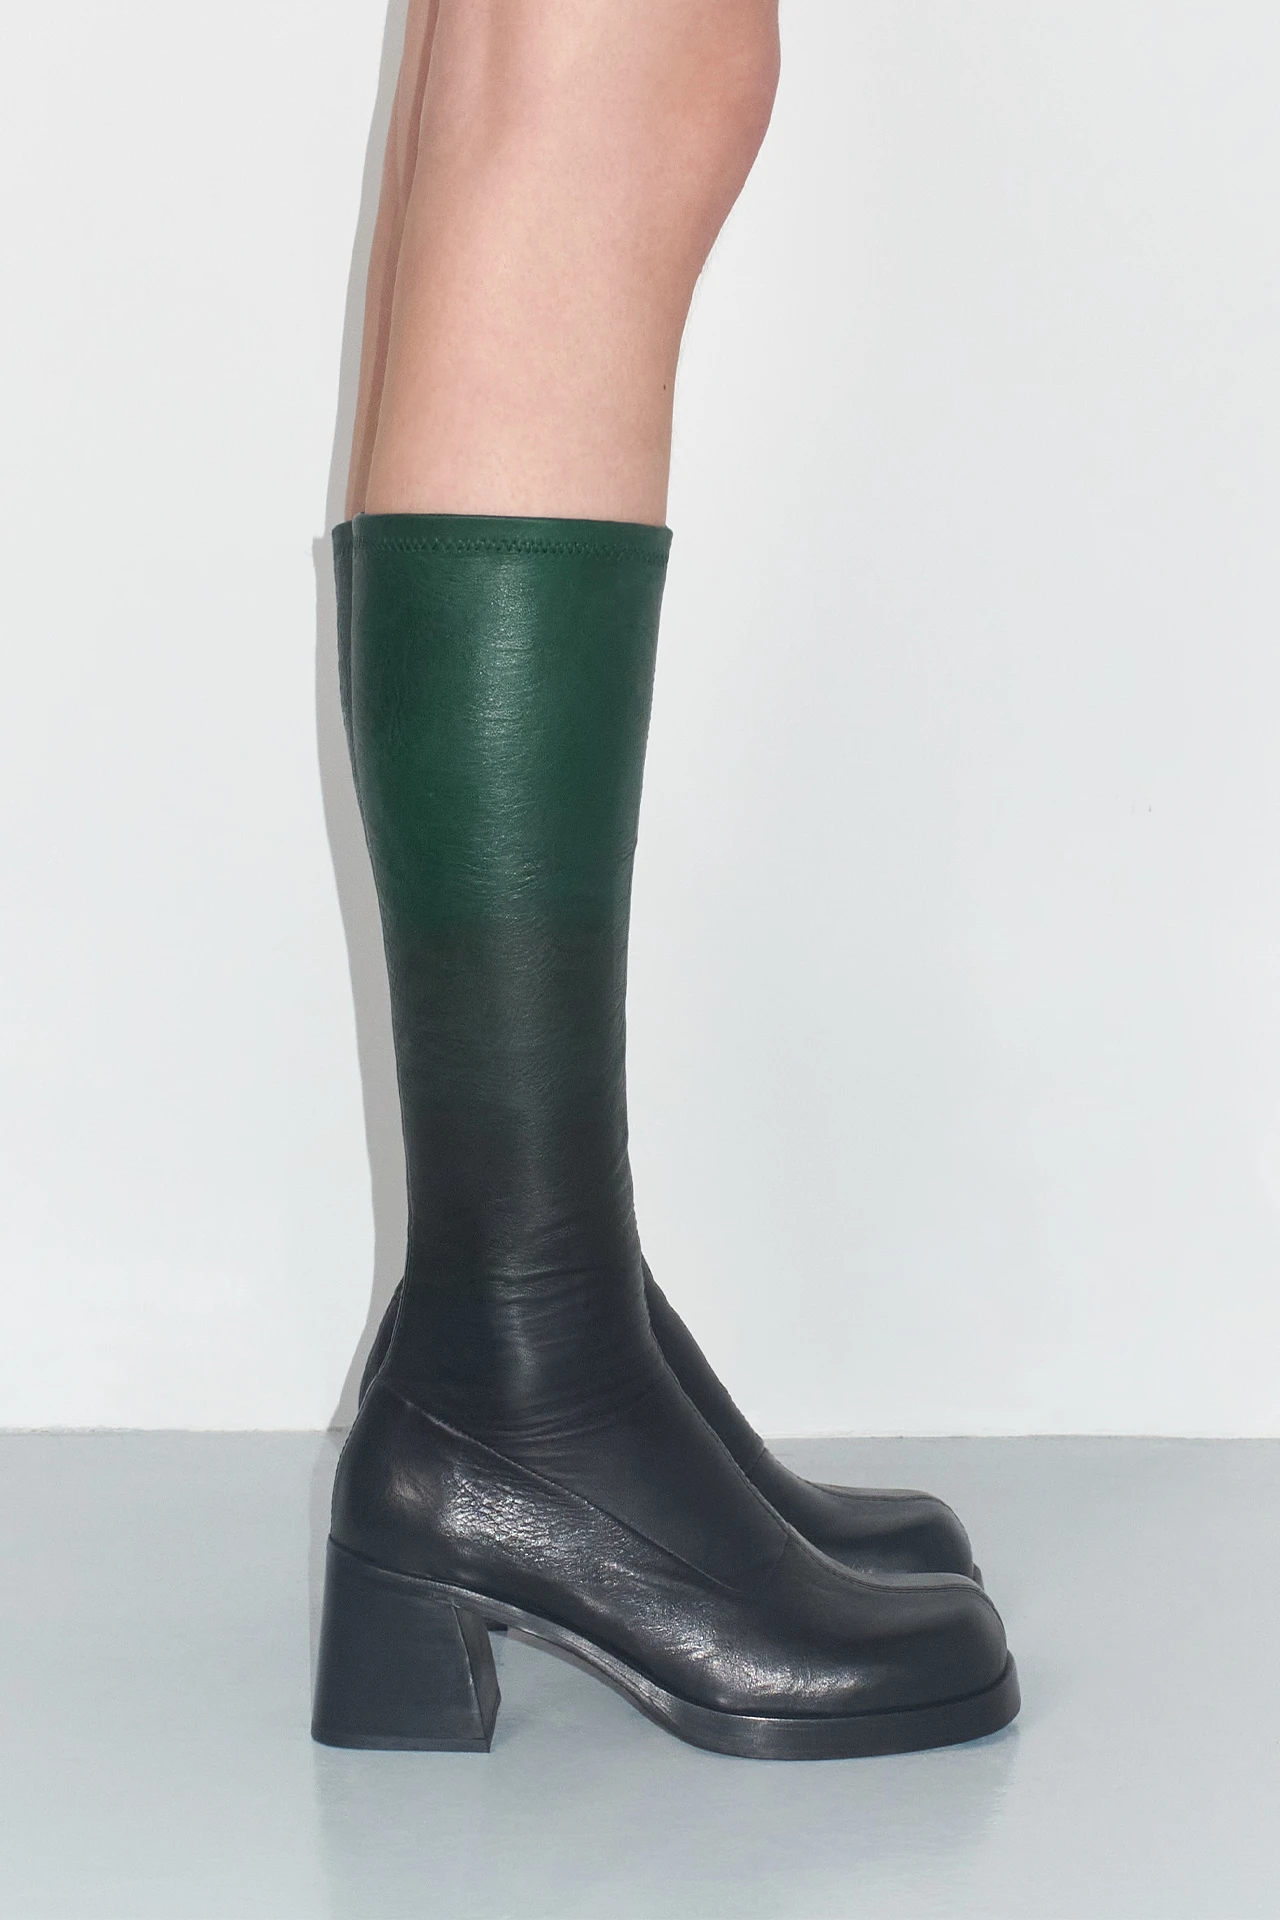 EC-Miista-Hedy-Black-Green-Degrade-Boots-04